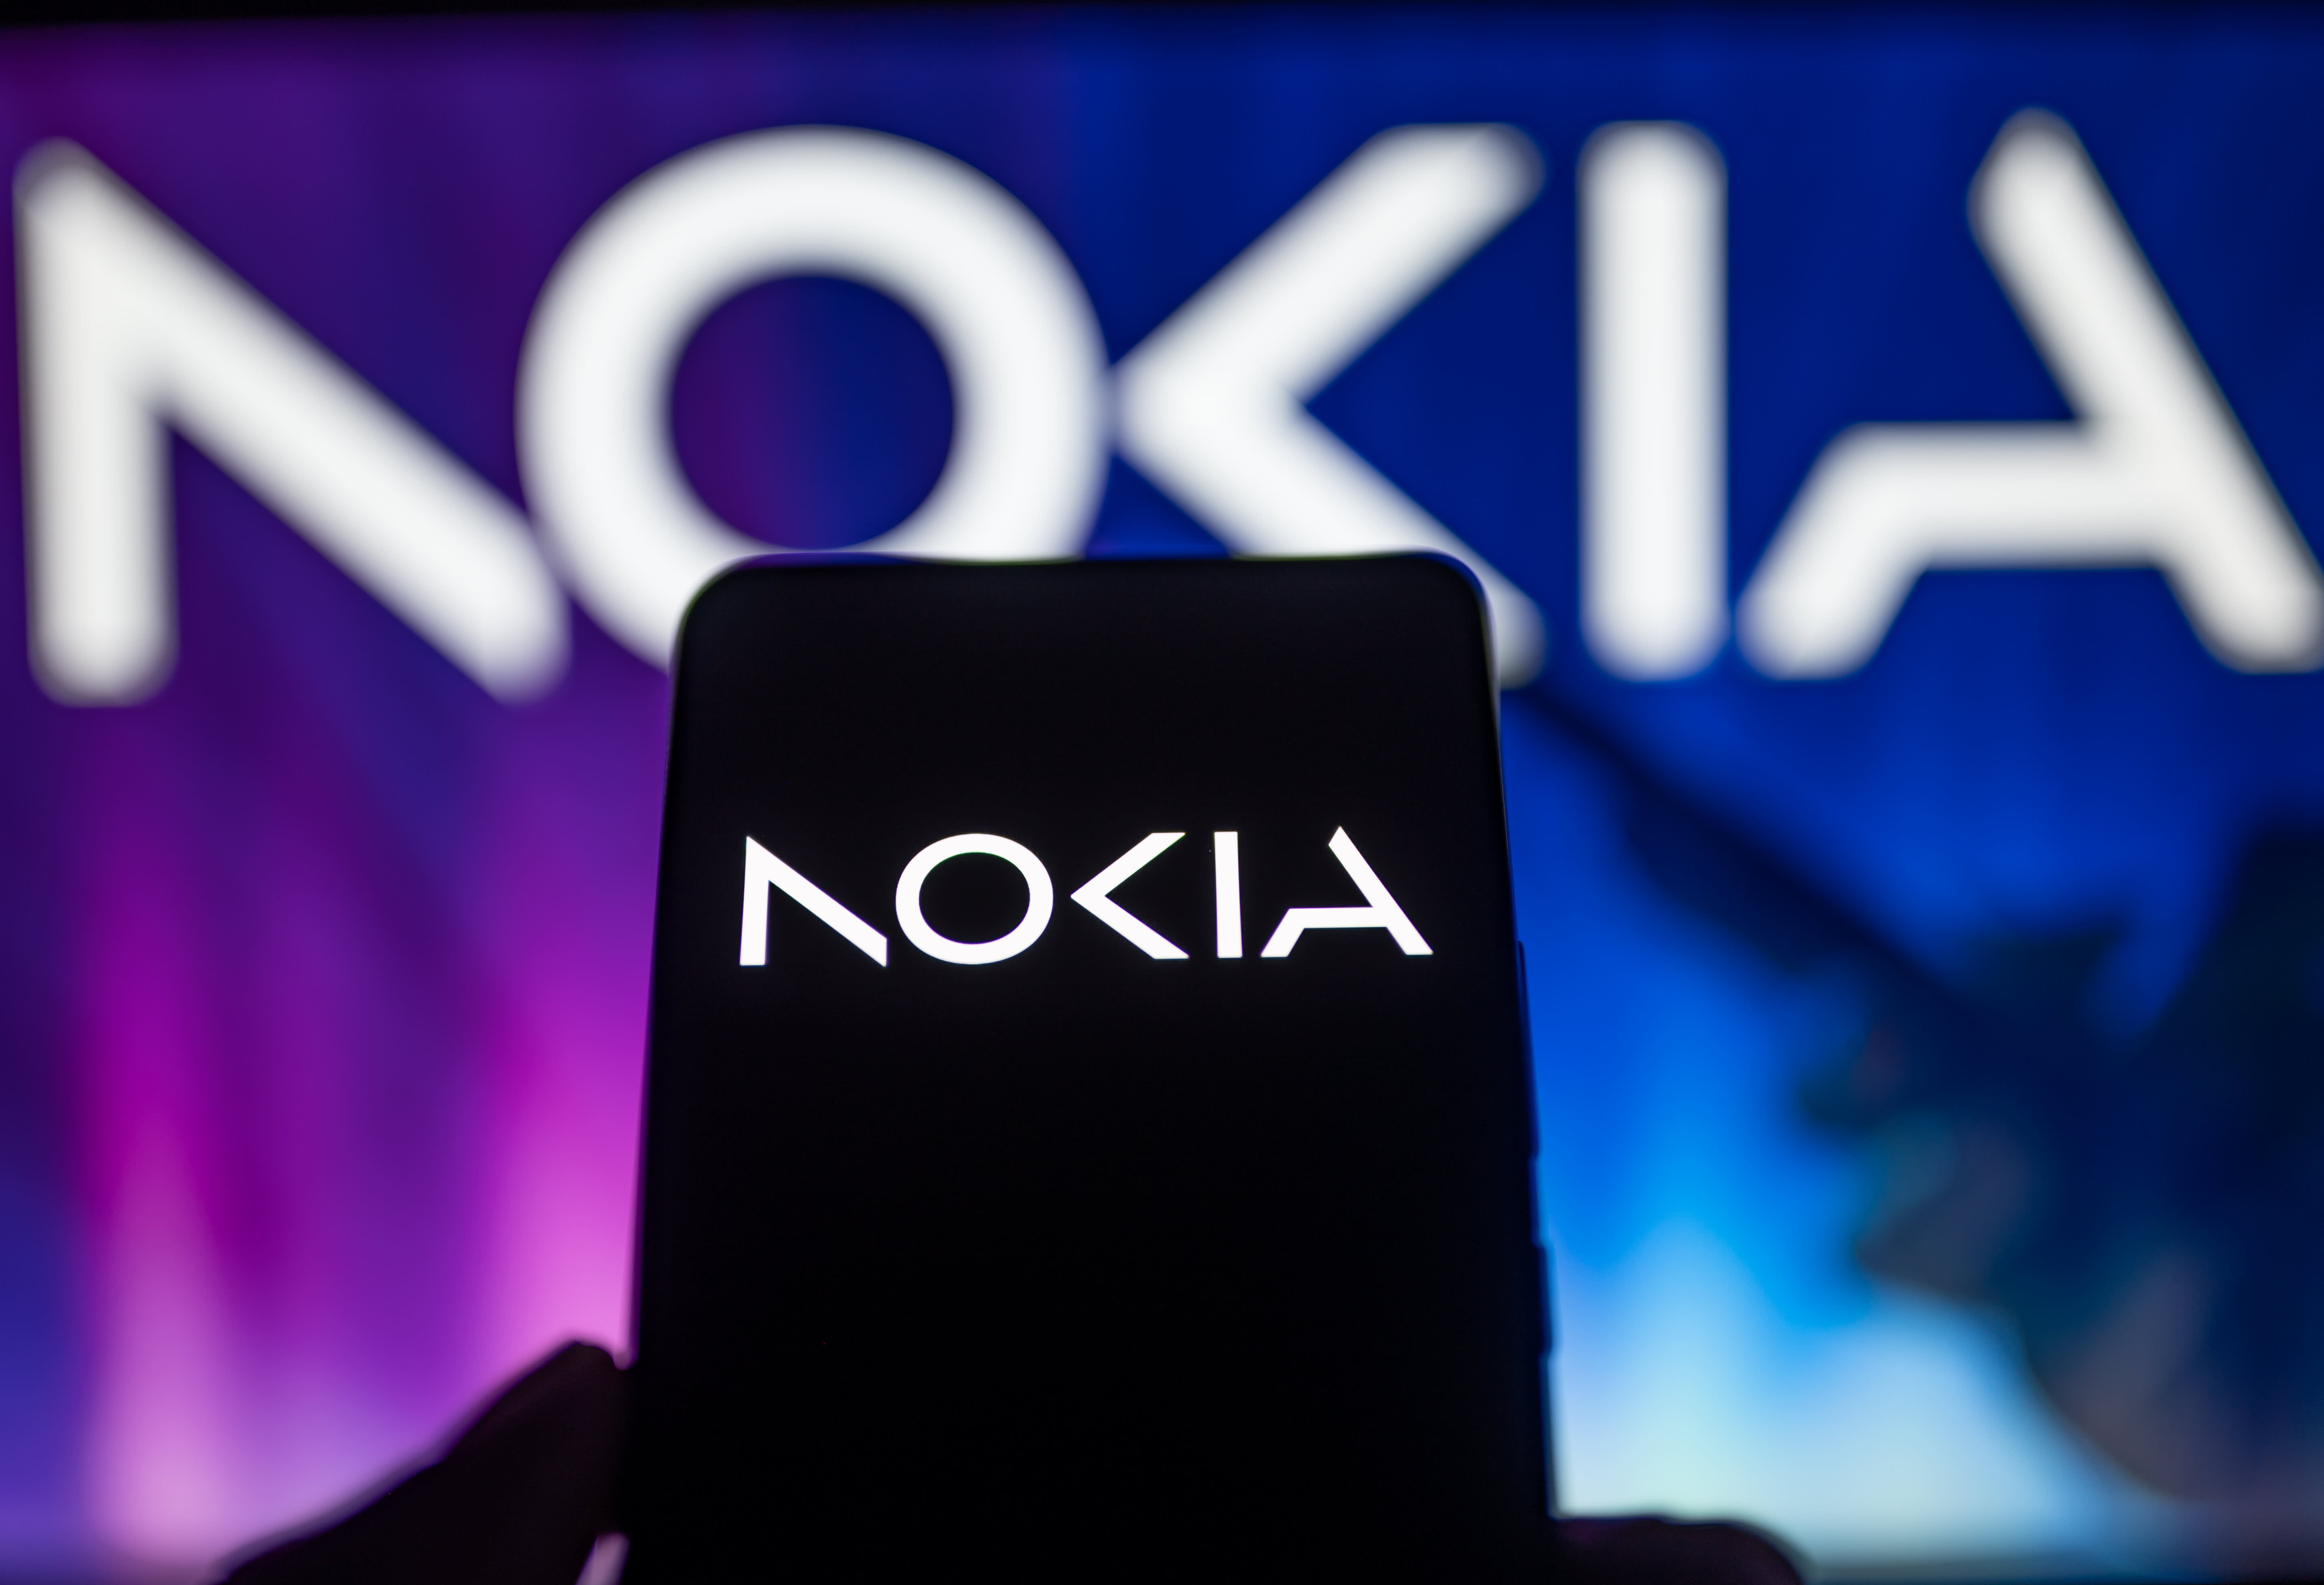 Nokia to cut 14,000 jobs after profit slump